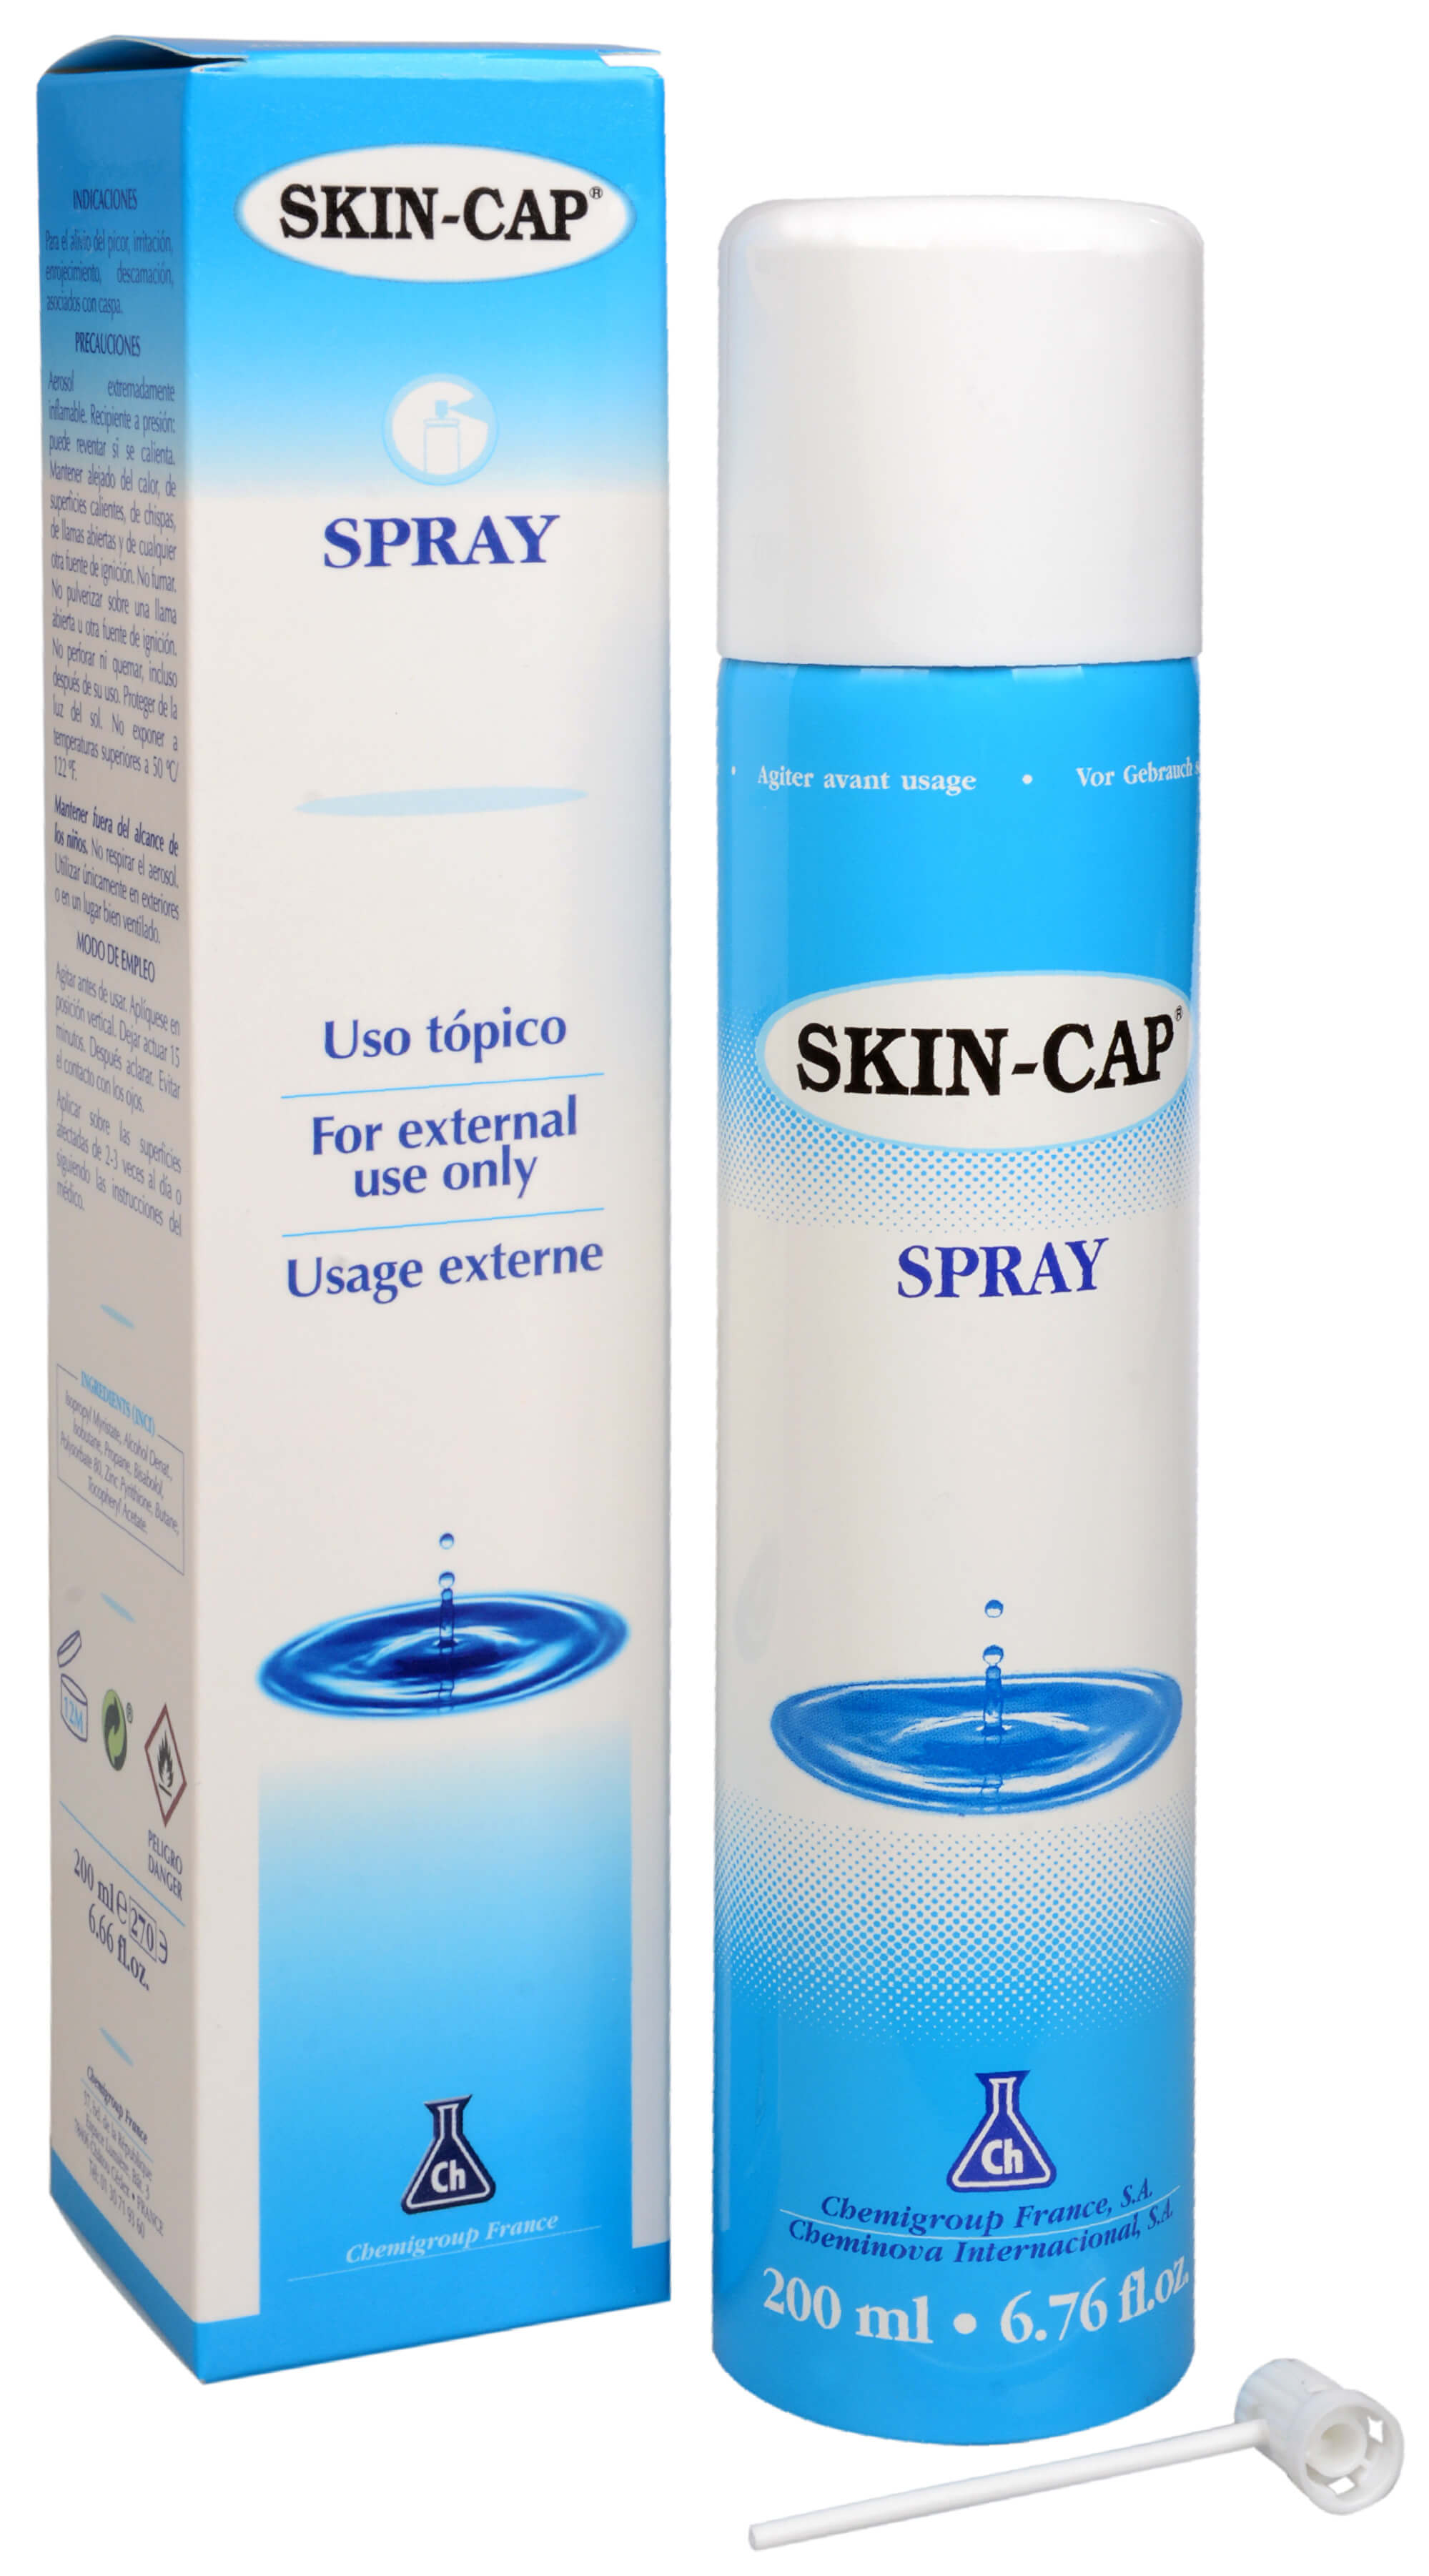 Skin-Cap Skin-Cap spray 200 ml